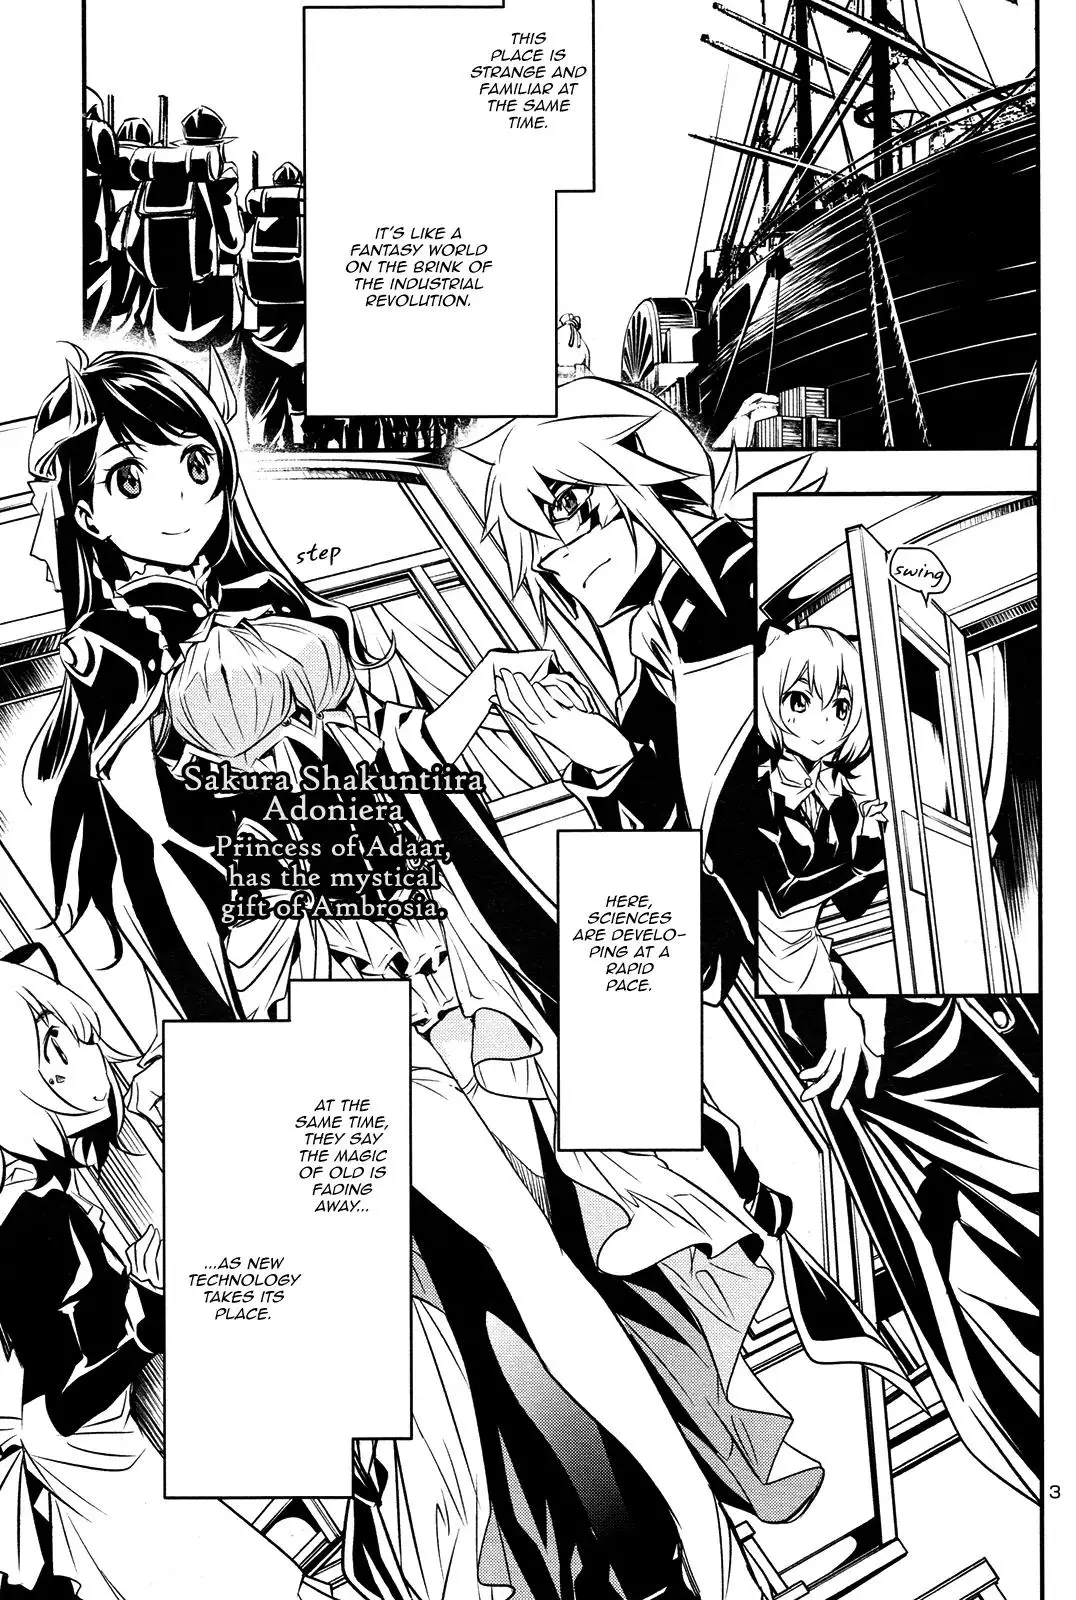 Shinju no Nectar - 9 page 1